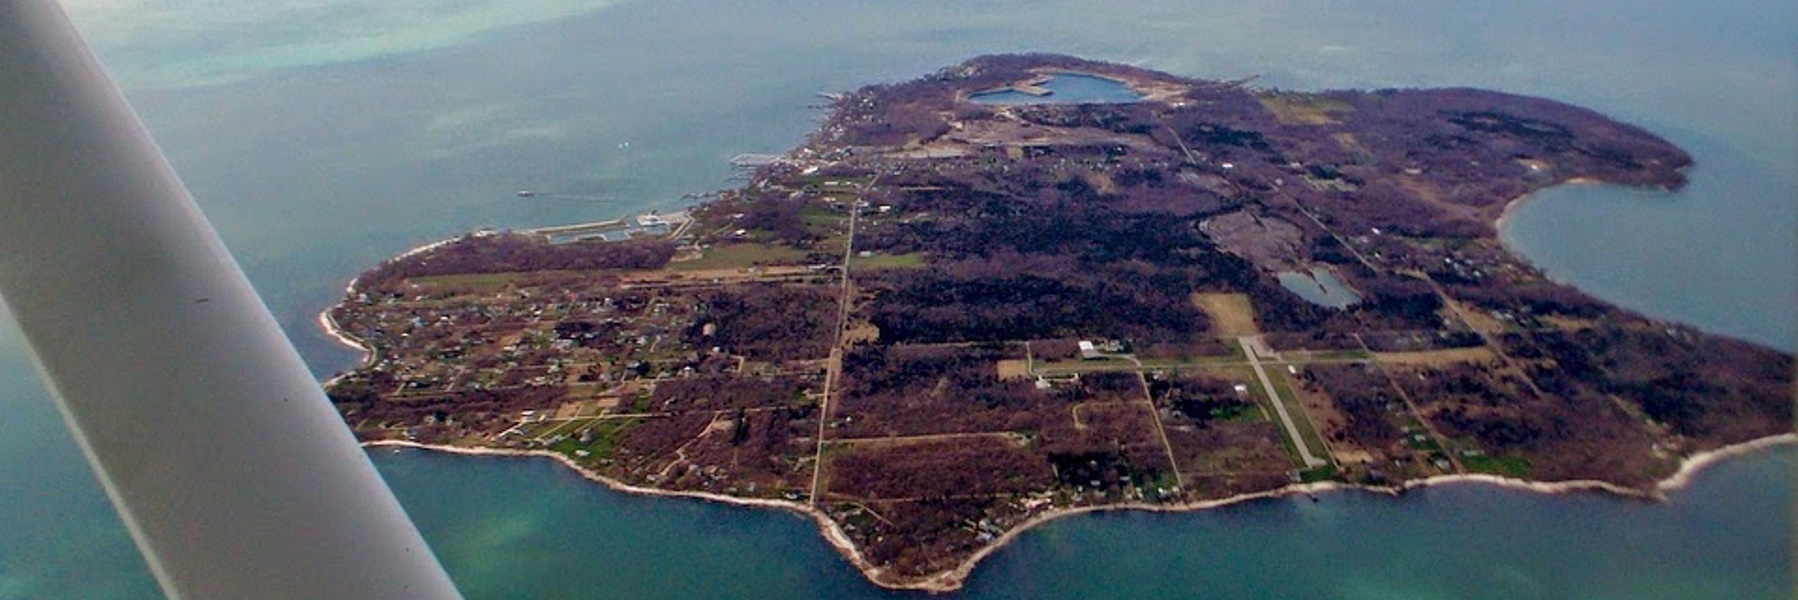 Kelleys Island aerial photo